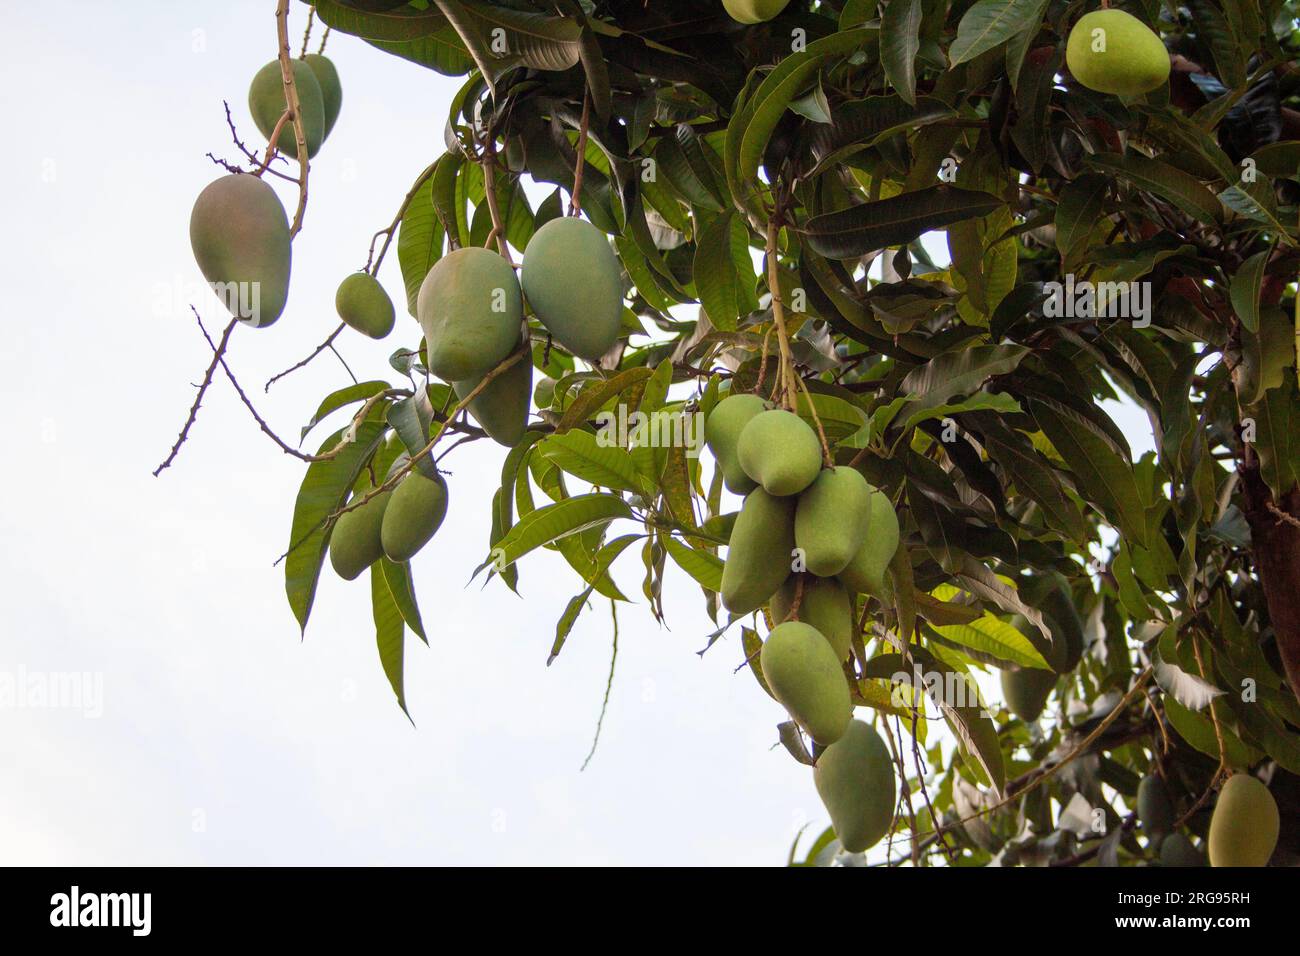 Konzentrieren Sie sich darauf, die Essenz des Mangobaums in seiner Umgebung zu erfassen, seine einzigartigen Eigenschaften und das Gefühl einer reichhaltigen Ernte hervorzuheben. Stockfoto